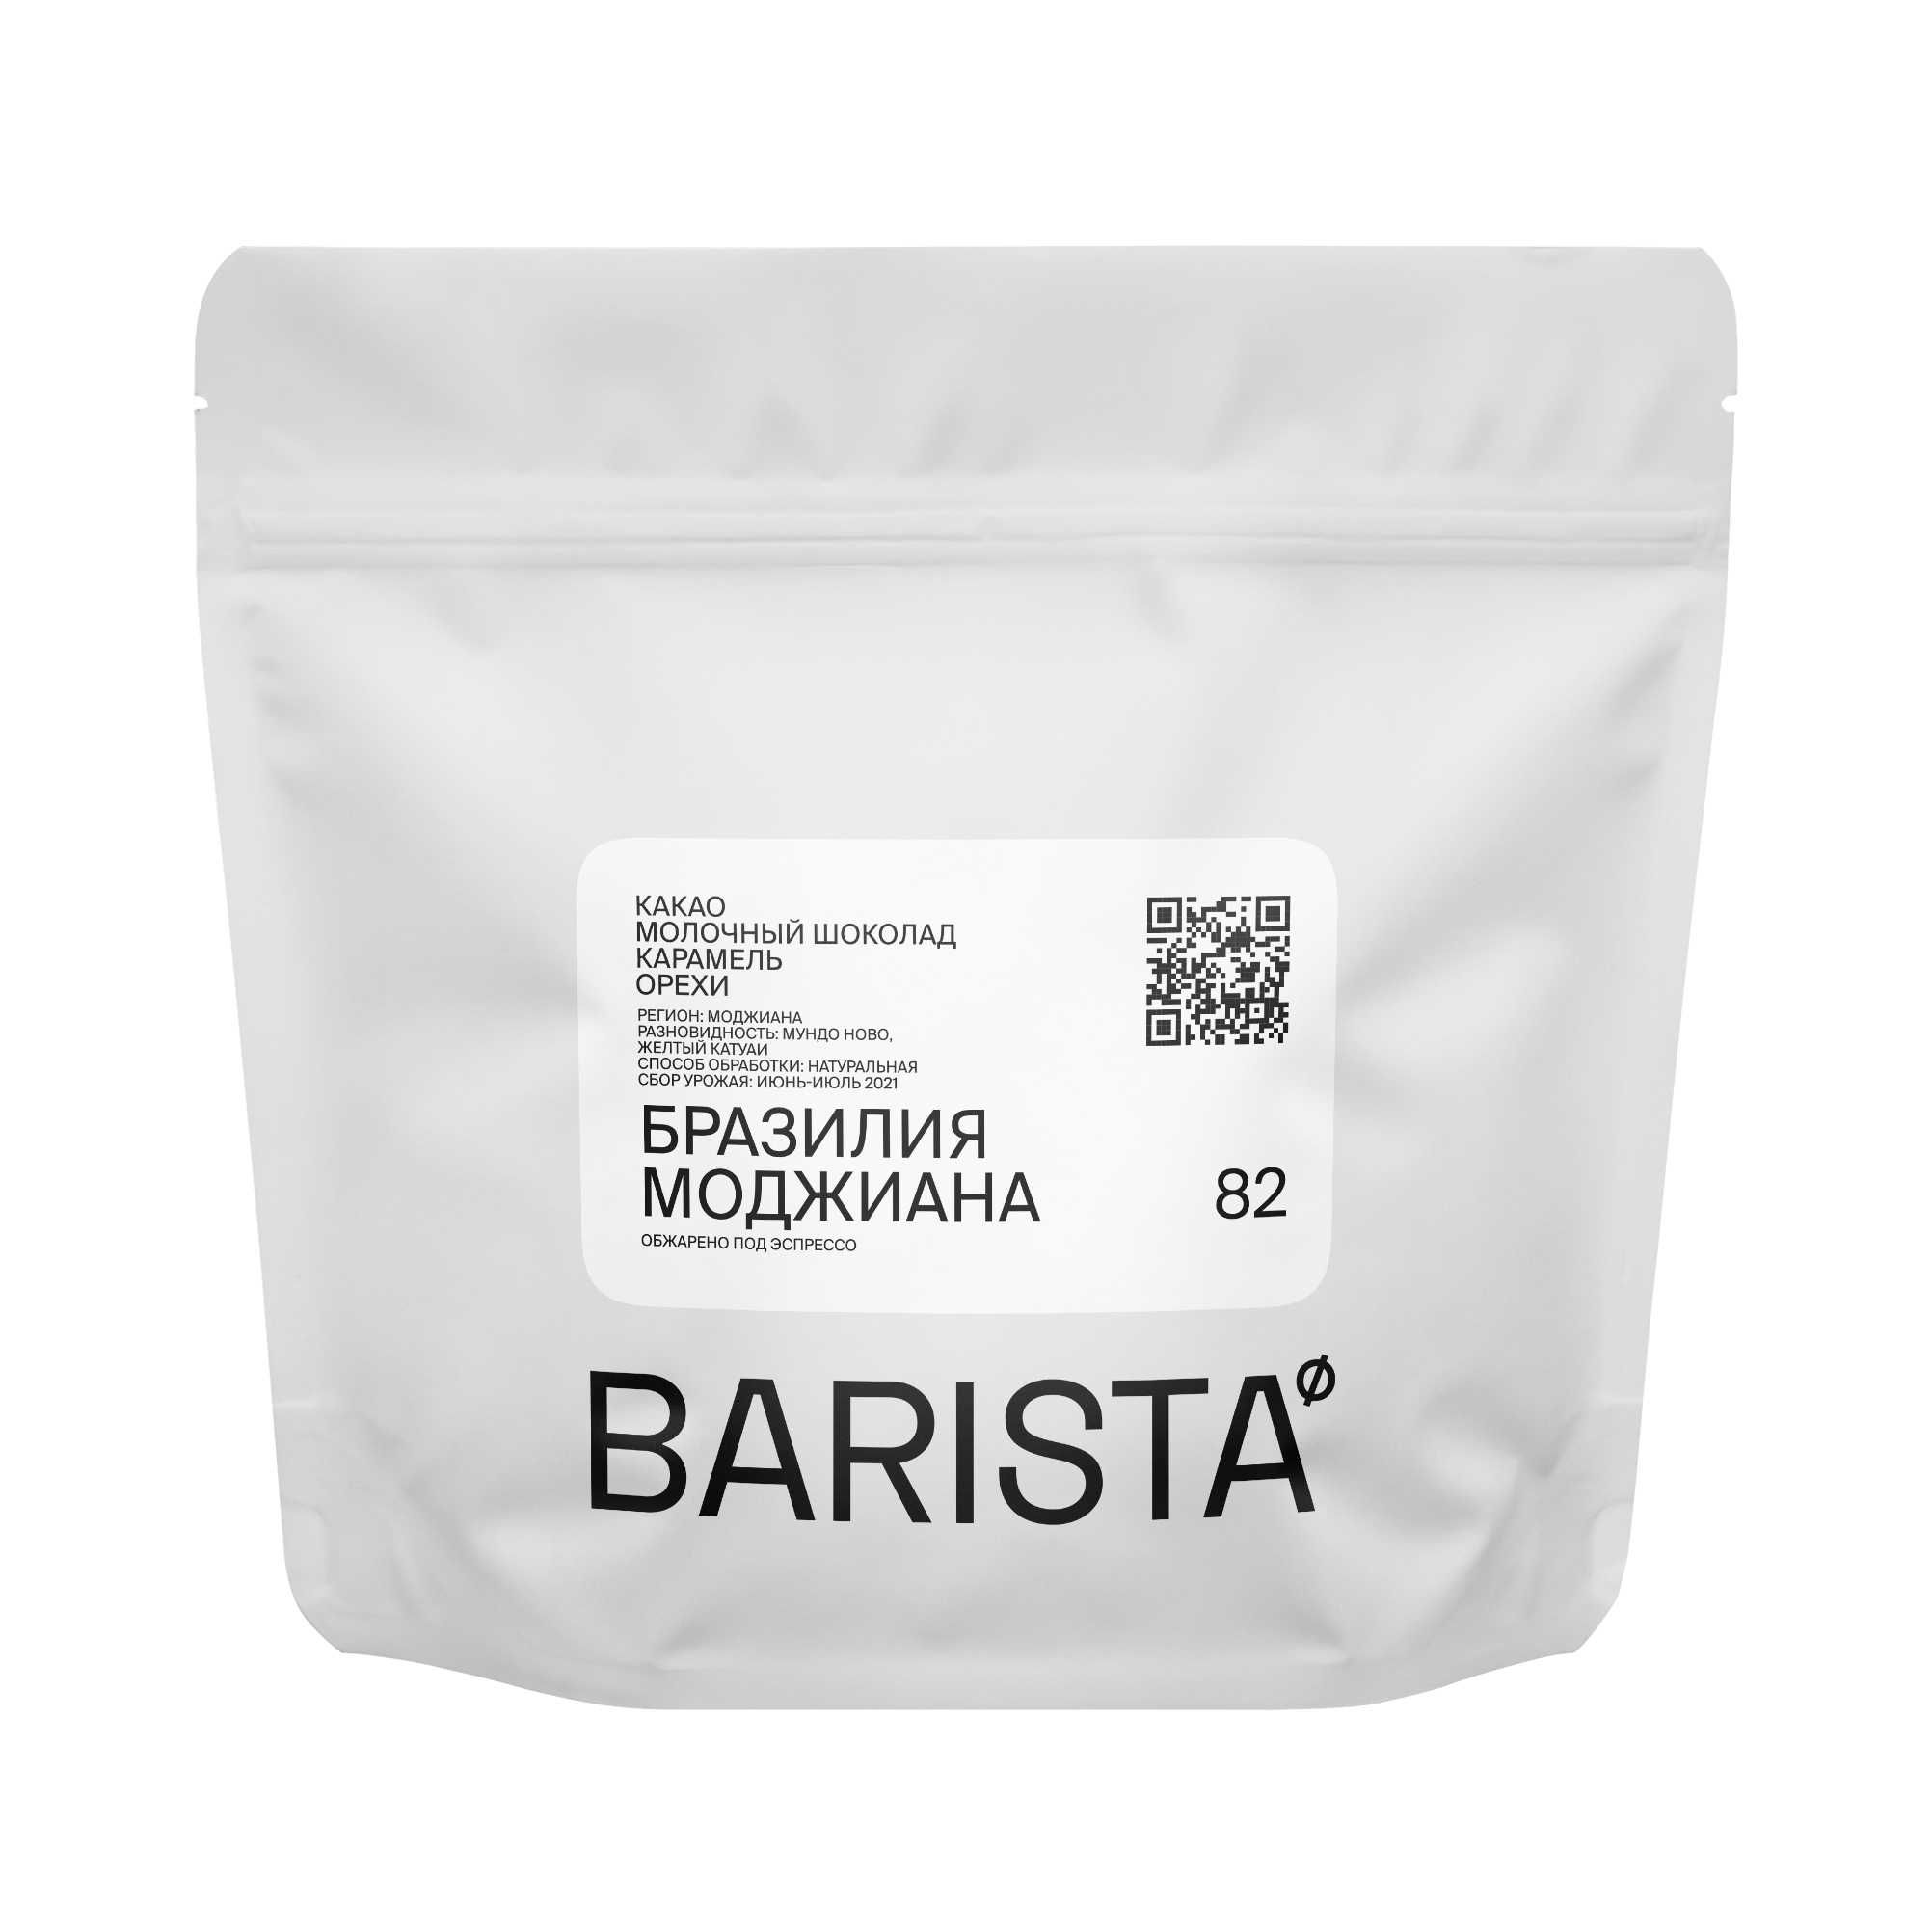 Кофе Бразилия Моджиана свежеобжаренный в зернах от Barista